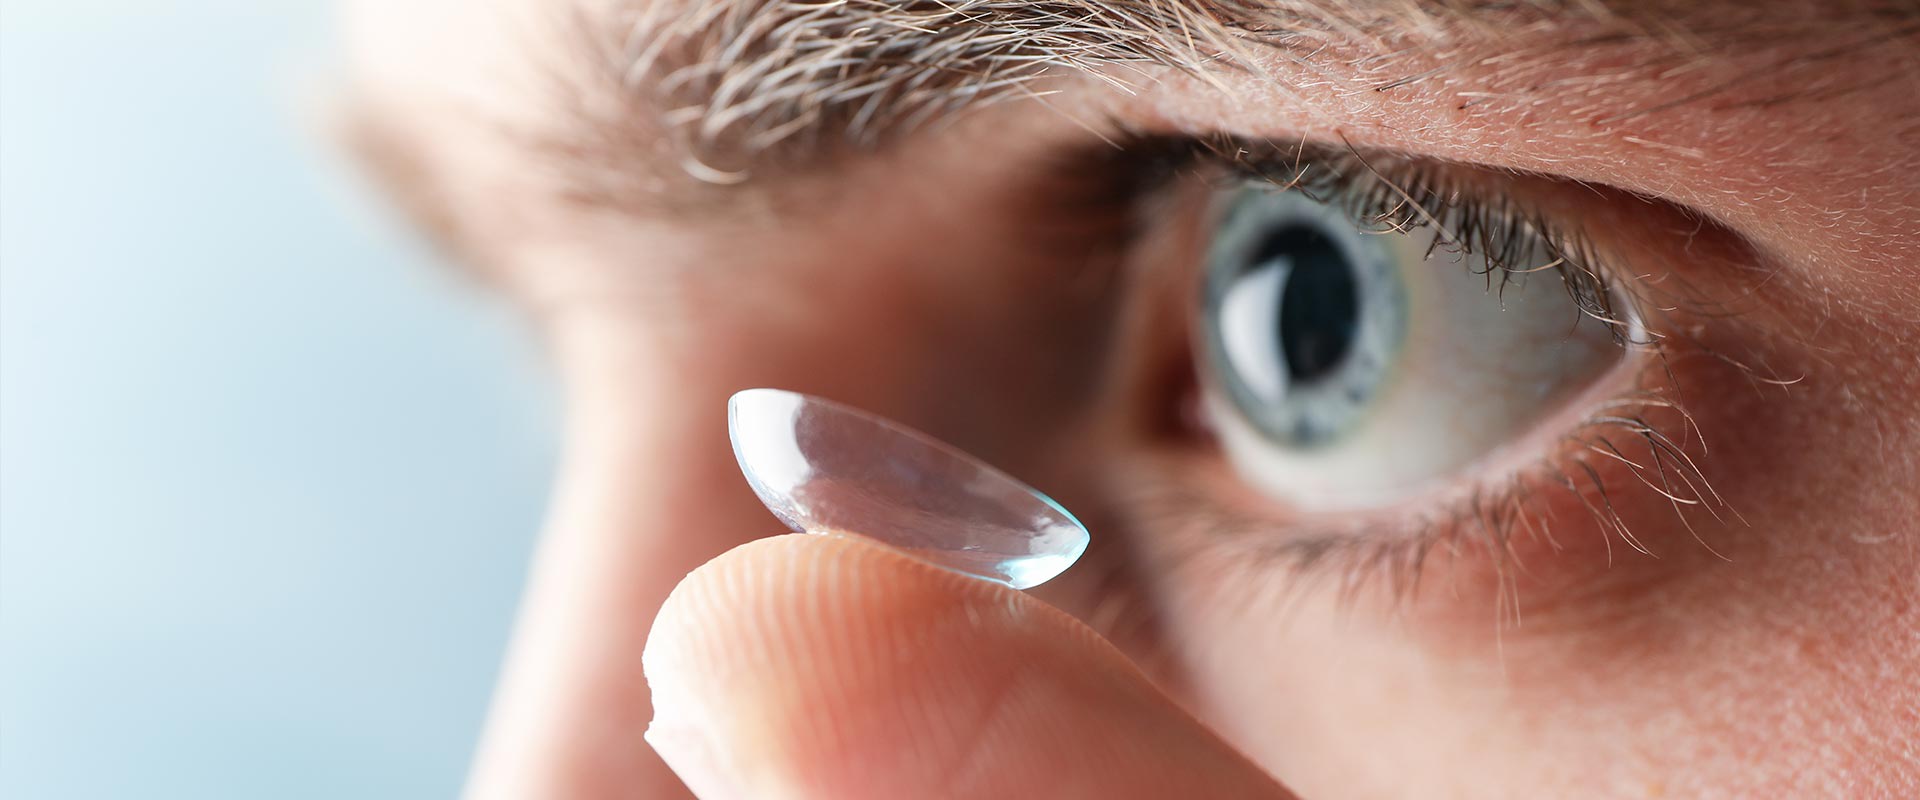 Qué pasa si uso lentes de contacto de uso diario por más tiempo?